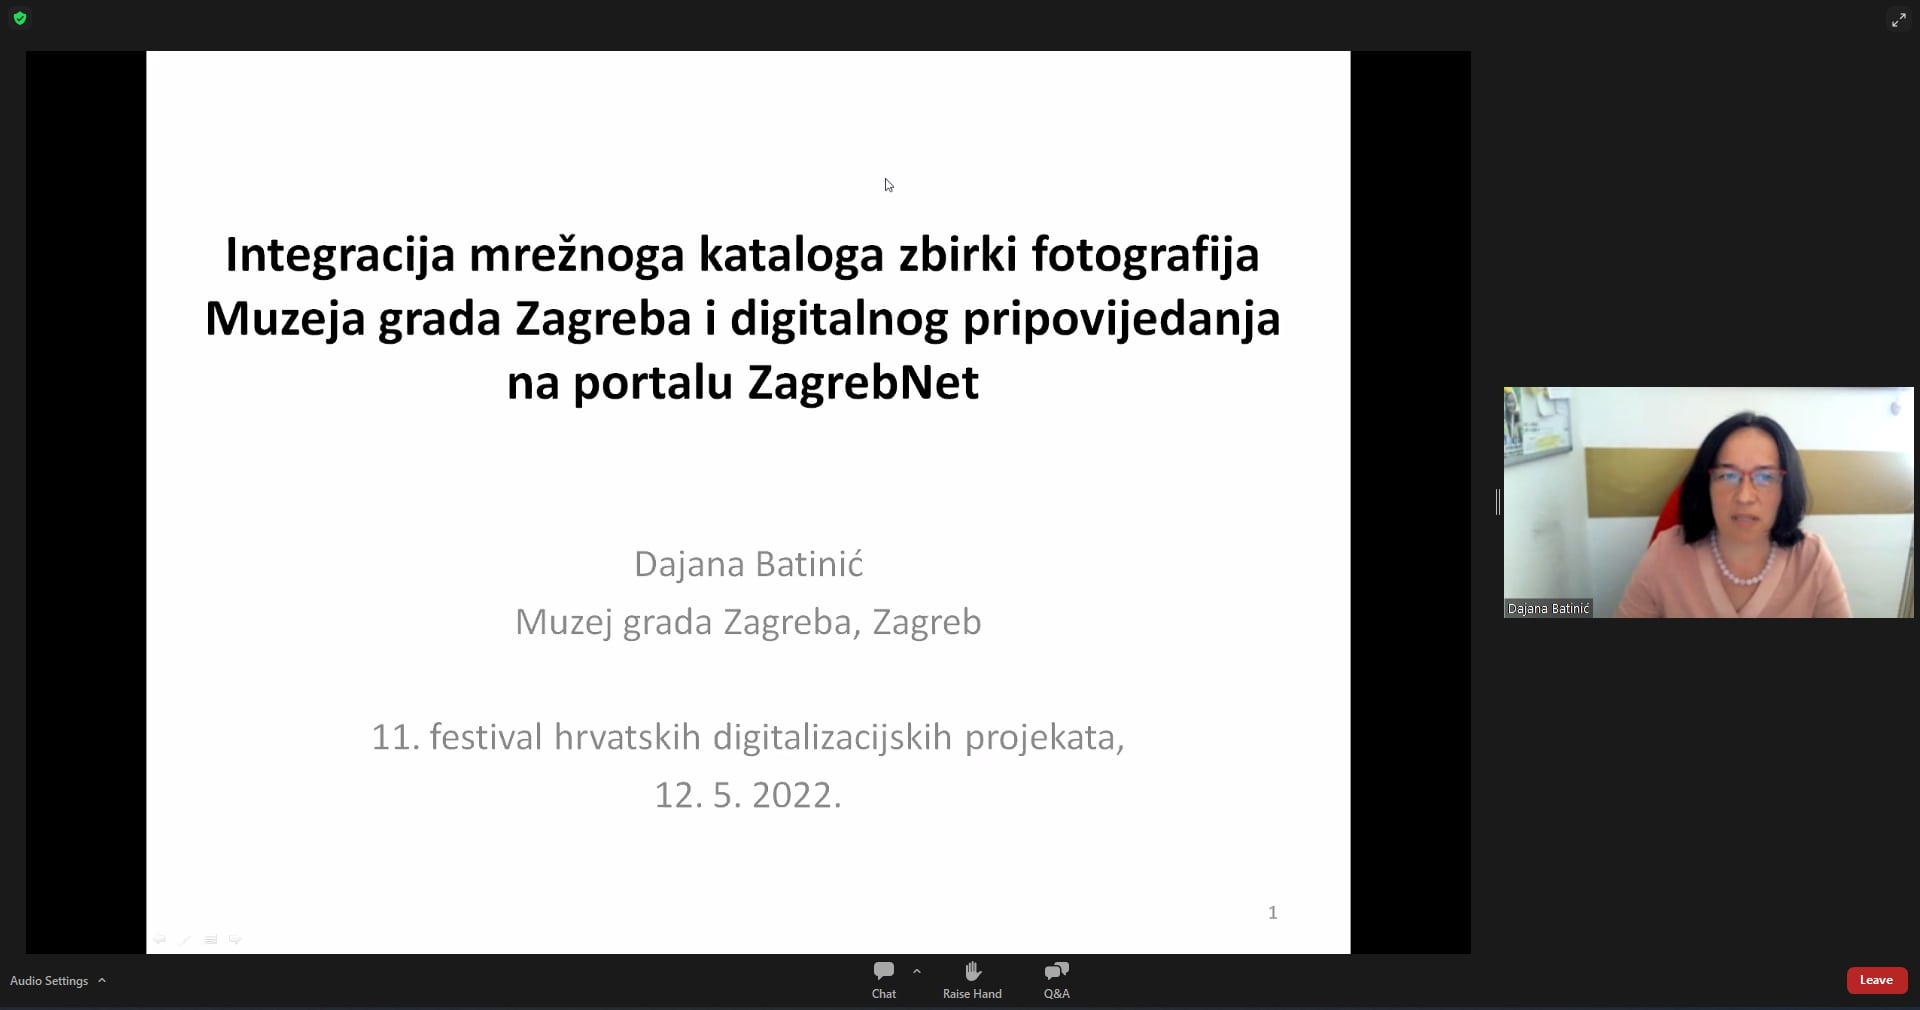 Dajana Batinić (Muzej grada Zagreba): Integracija mrežnog kataloga zbirki fotografija Muzeja grada Zagreba i digitalnog pripovijedanja na portalu ZagrebNet